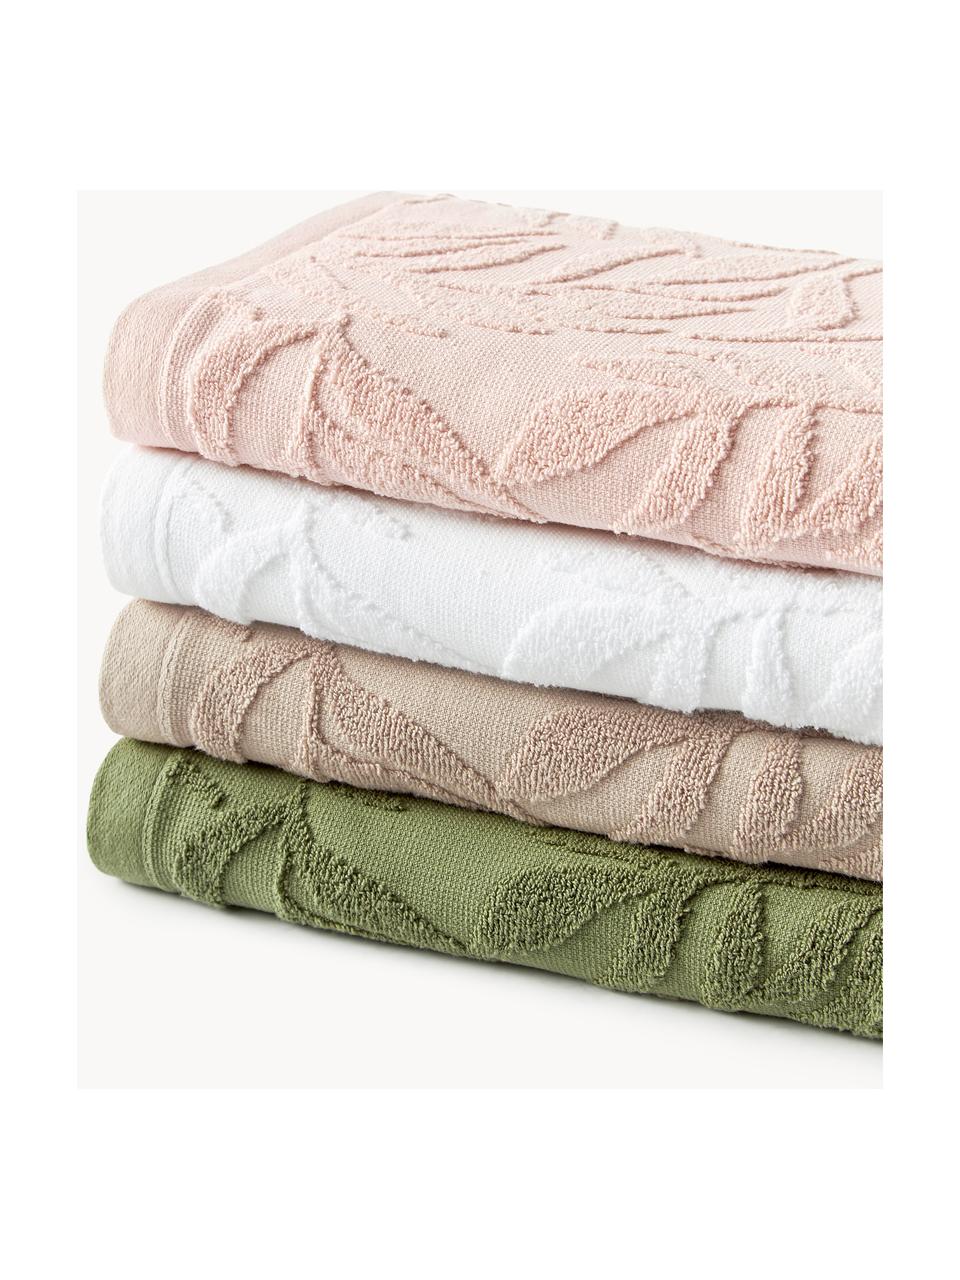 Ręcznik Leaf, różne rozmiary, Ciemny zielony, Ręcznik, S 50 x D 100 cm, 2 szt.